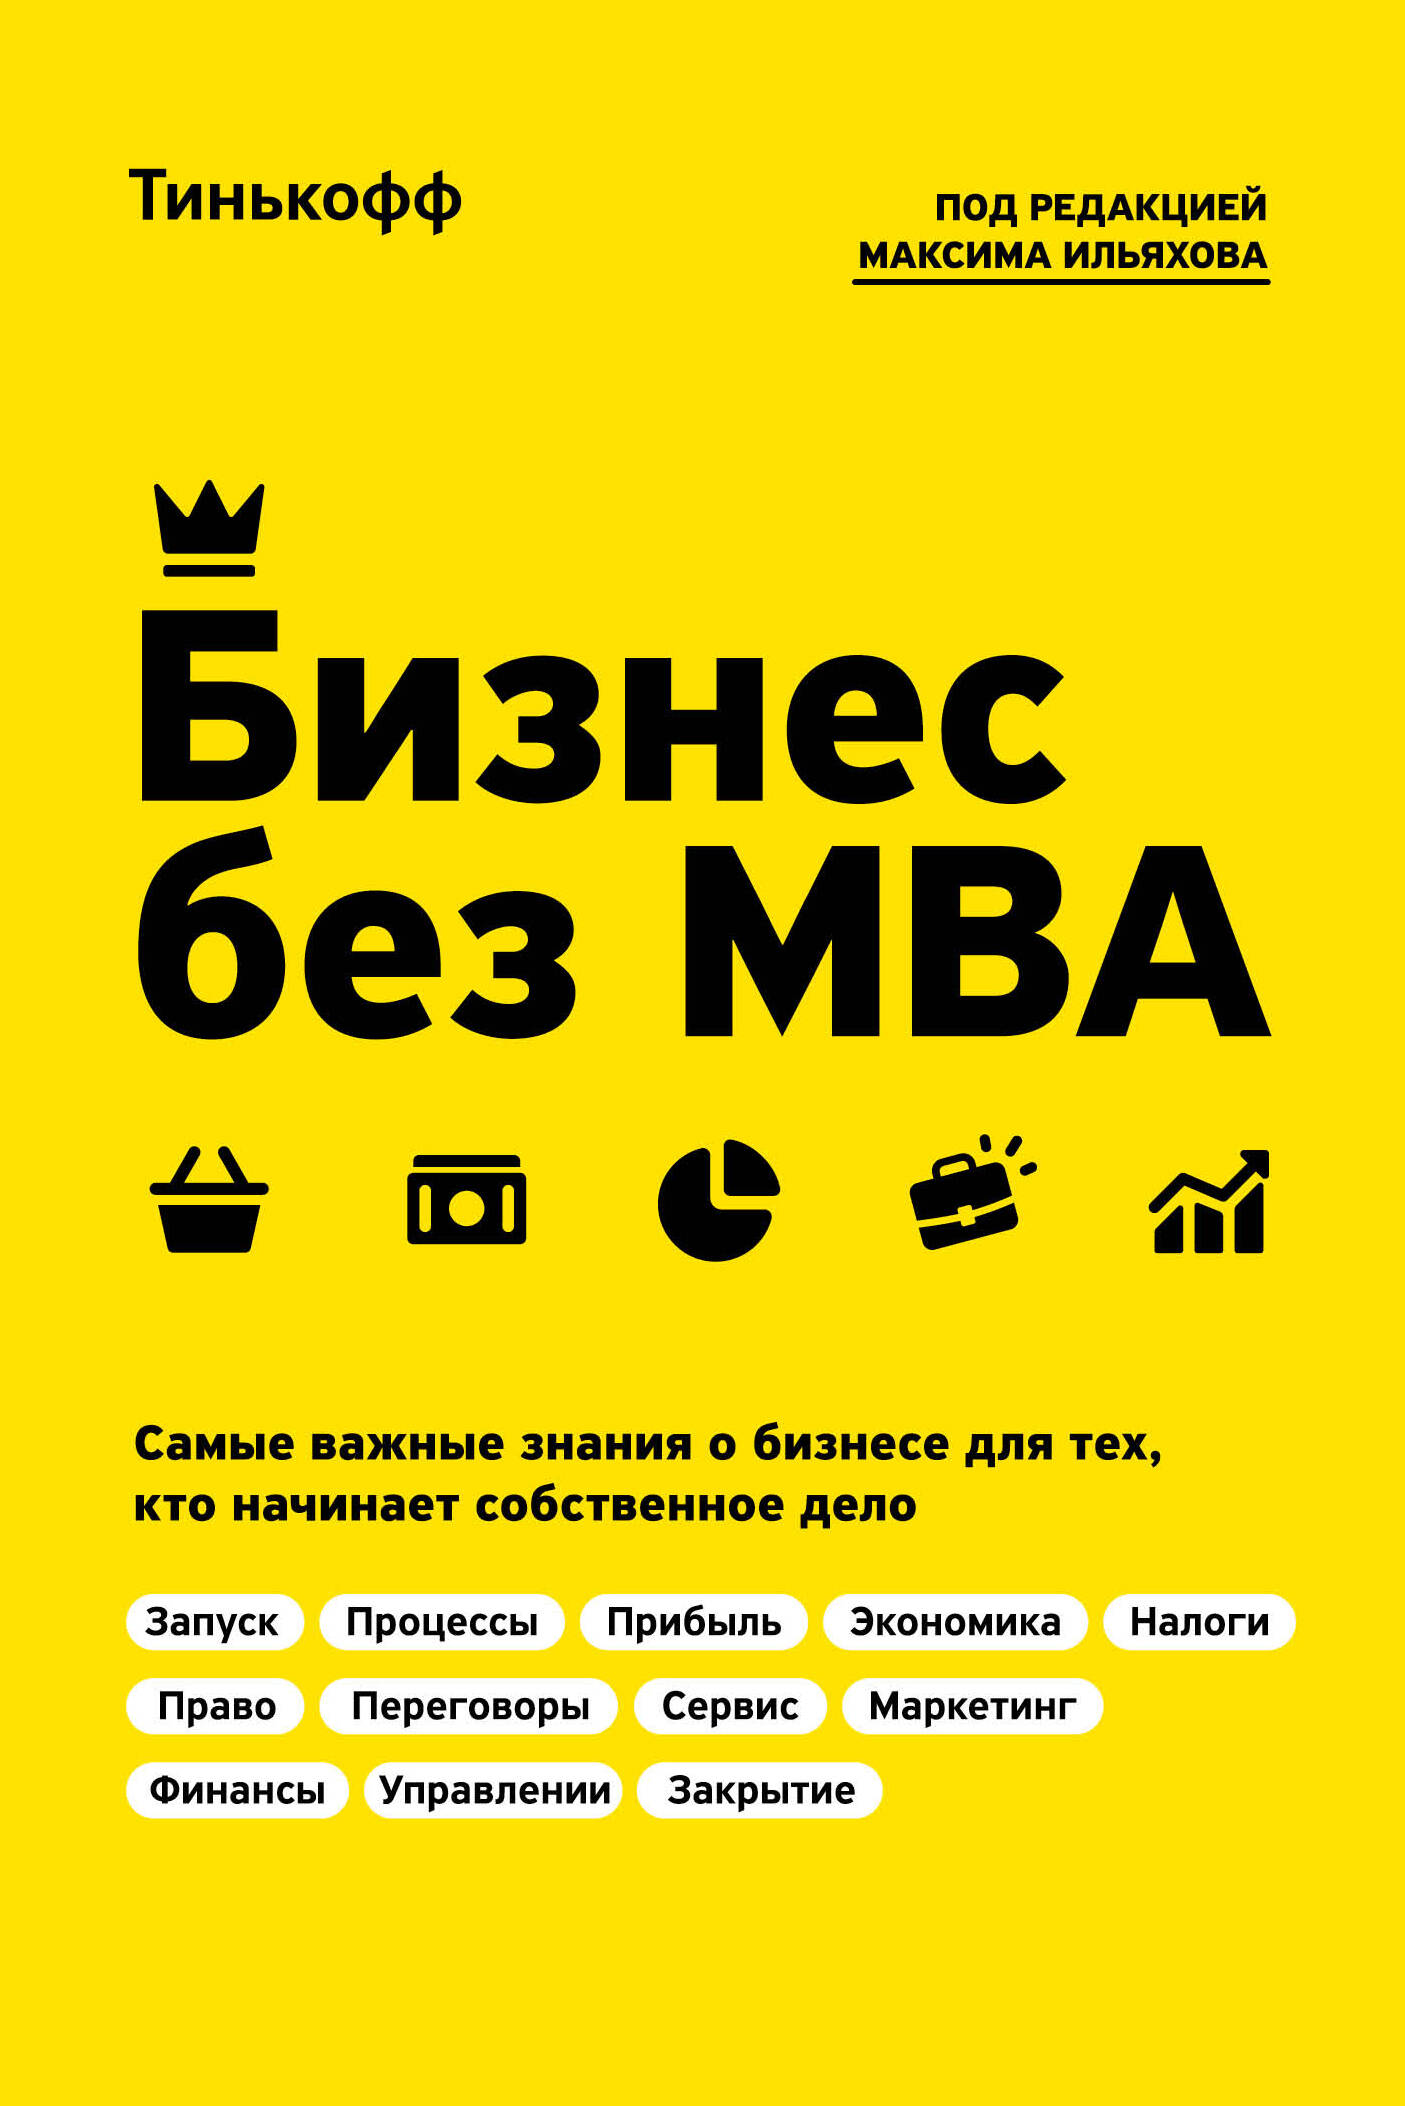 ильяхов максим текст по полочкам краткое пособие по деловой переписке Бизнес без MBA